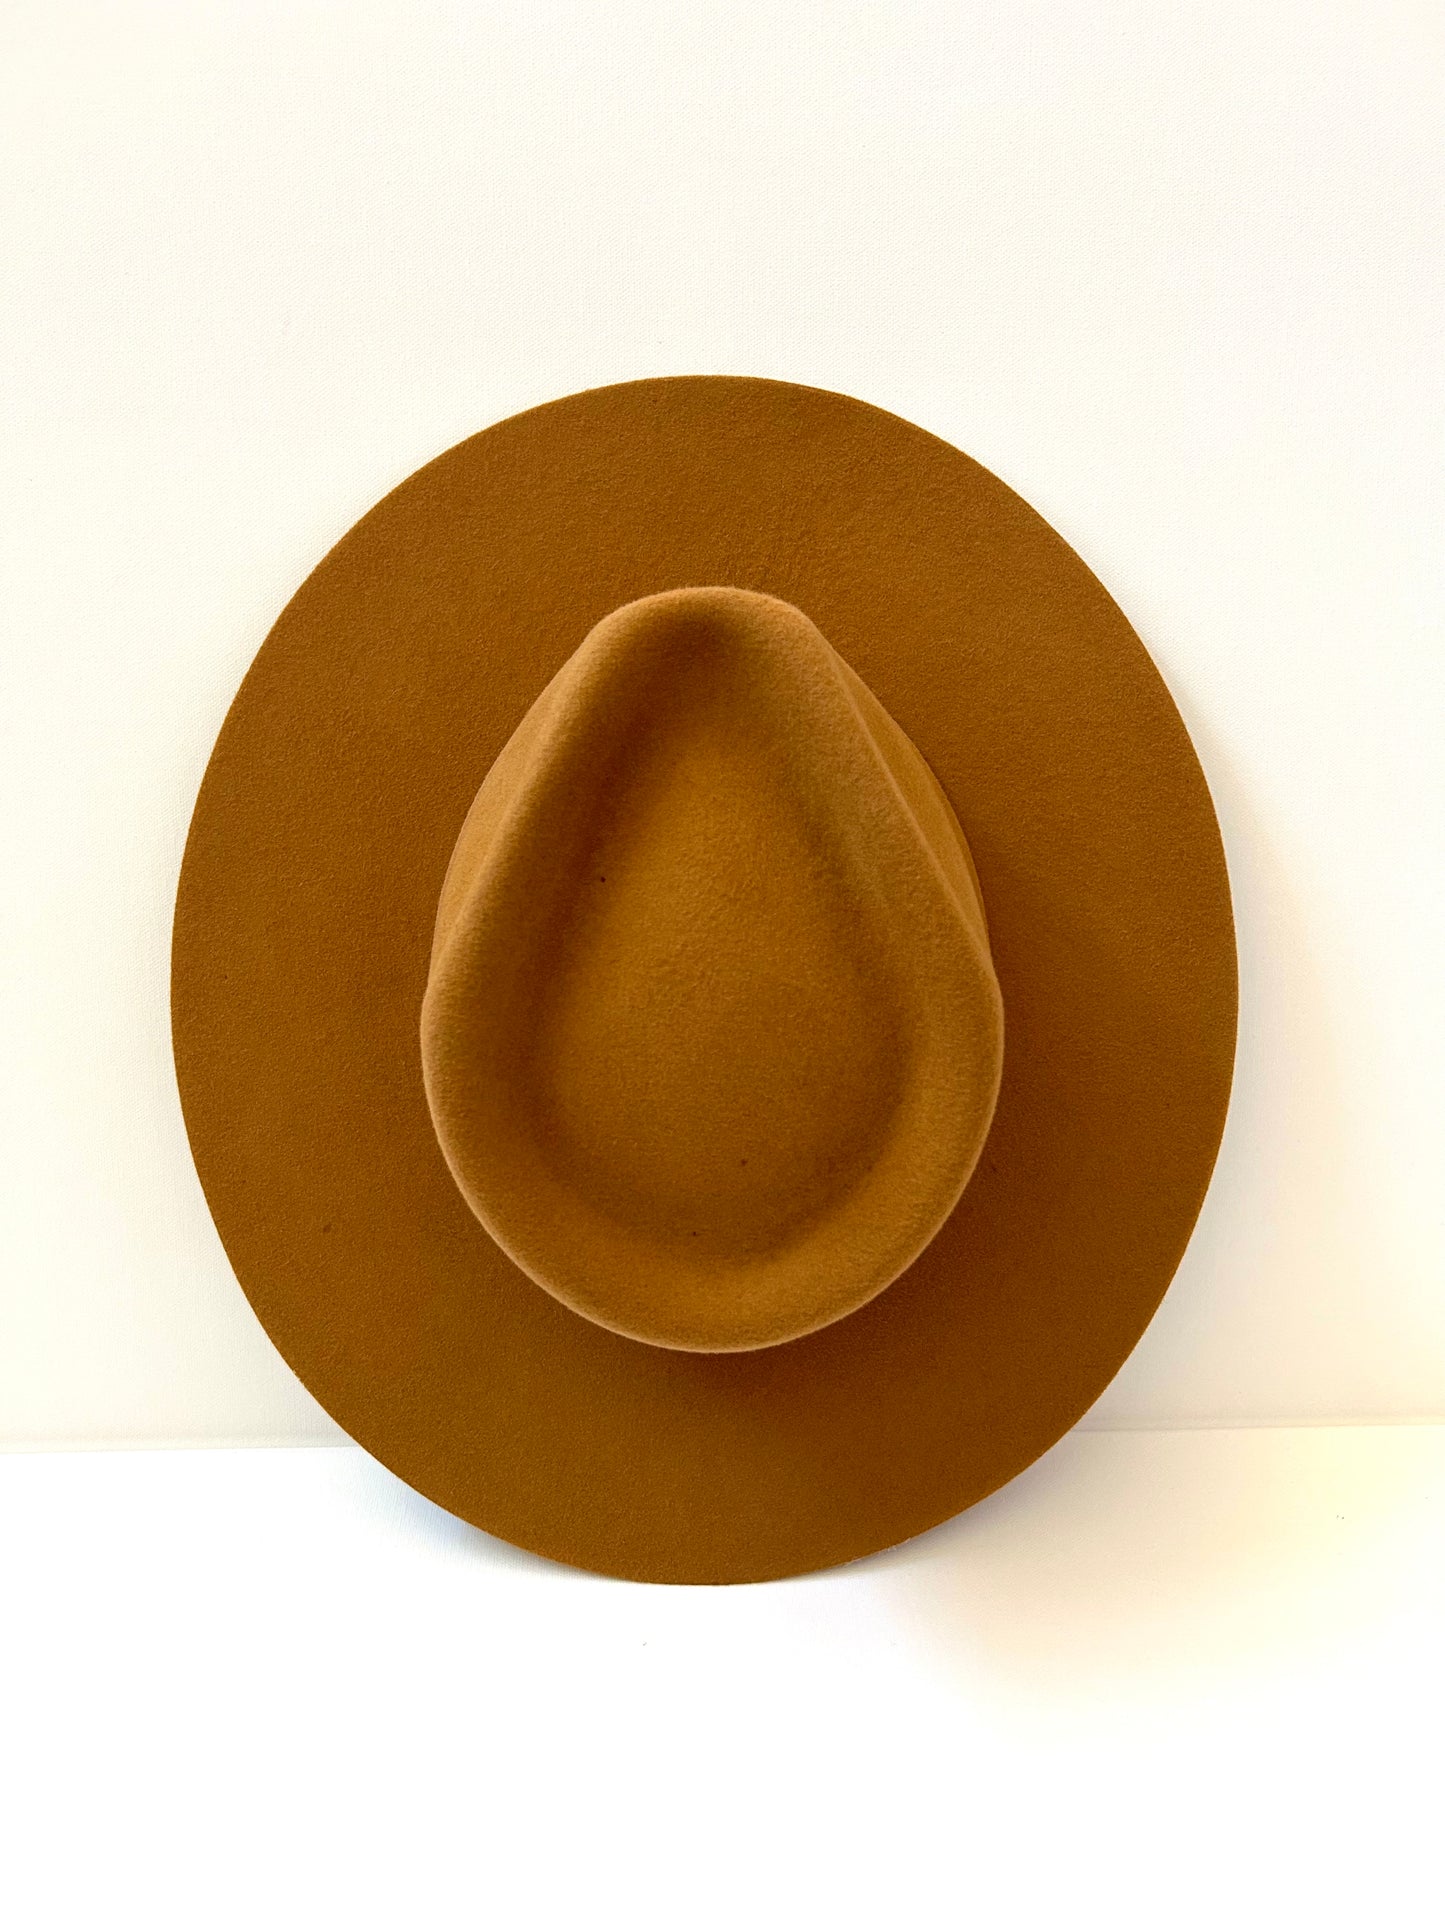 Emery Merino Wool Teardrop Rancher Hat - Caramel